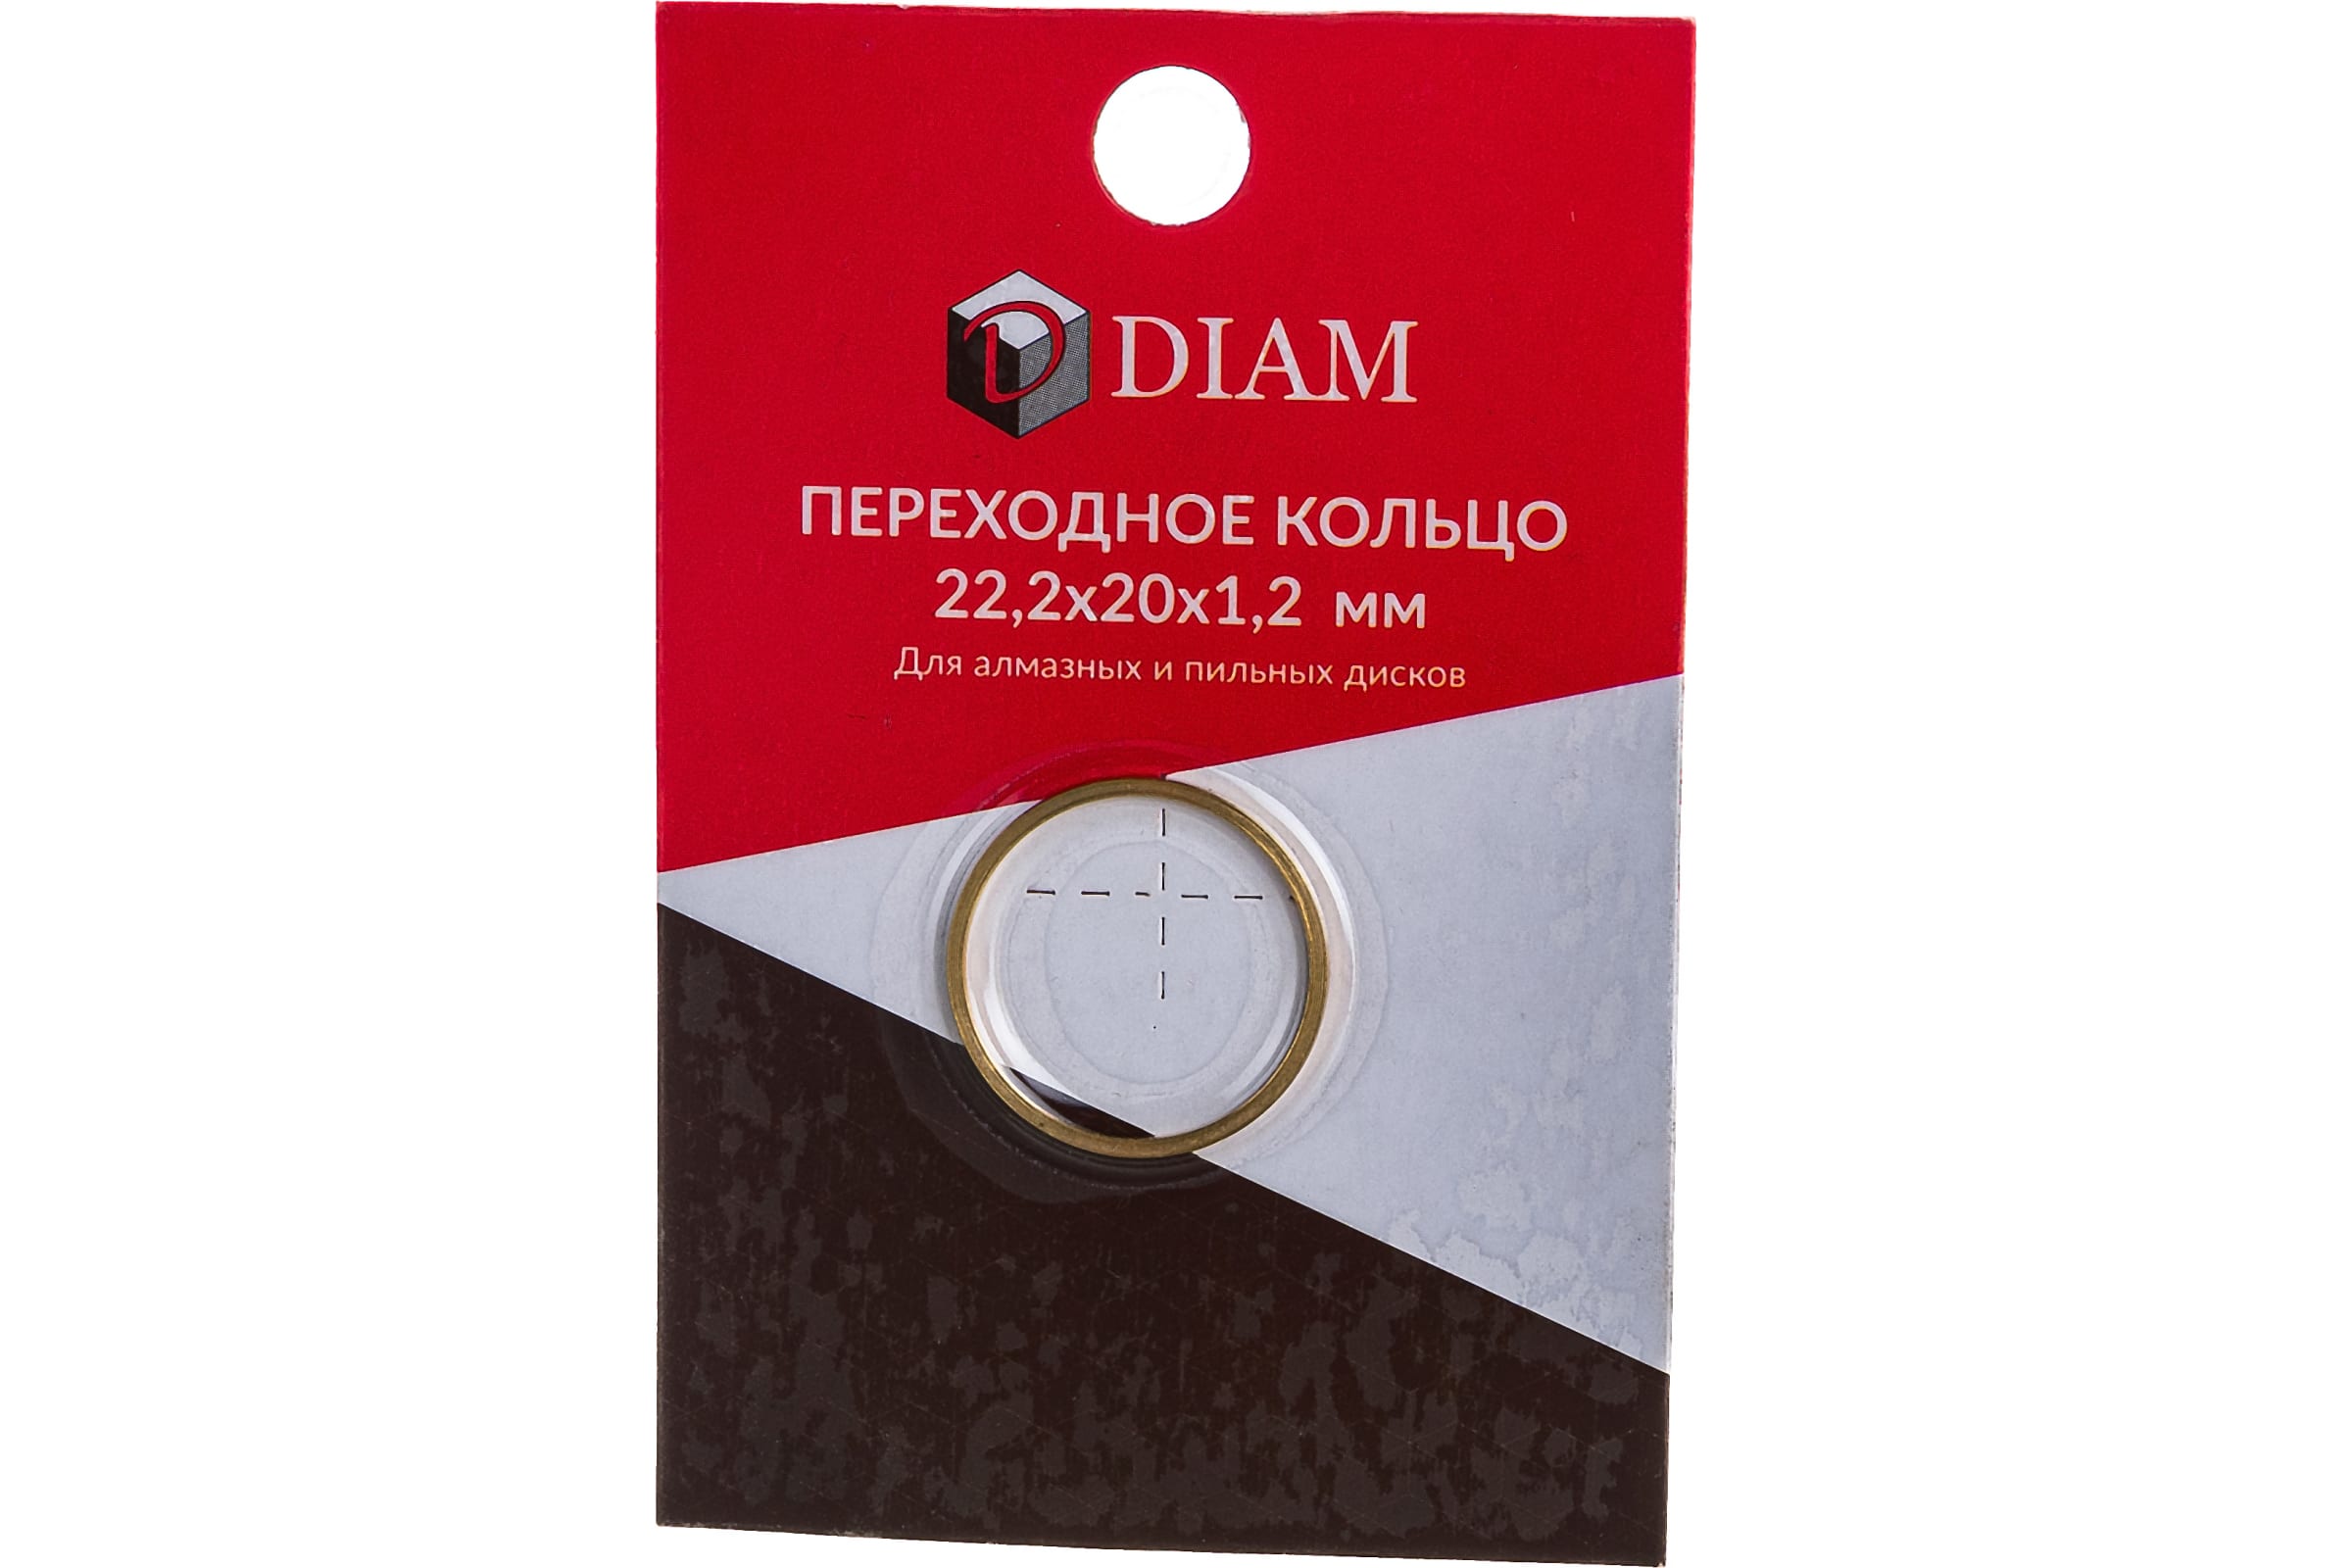 DIAM Переходное кольцо 22,2х20х1,2 640082 стопорное кольцо для пневматического насоса diam 42 piusi